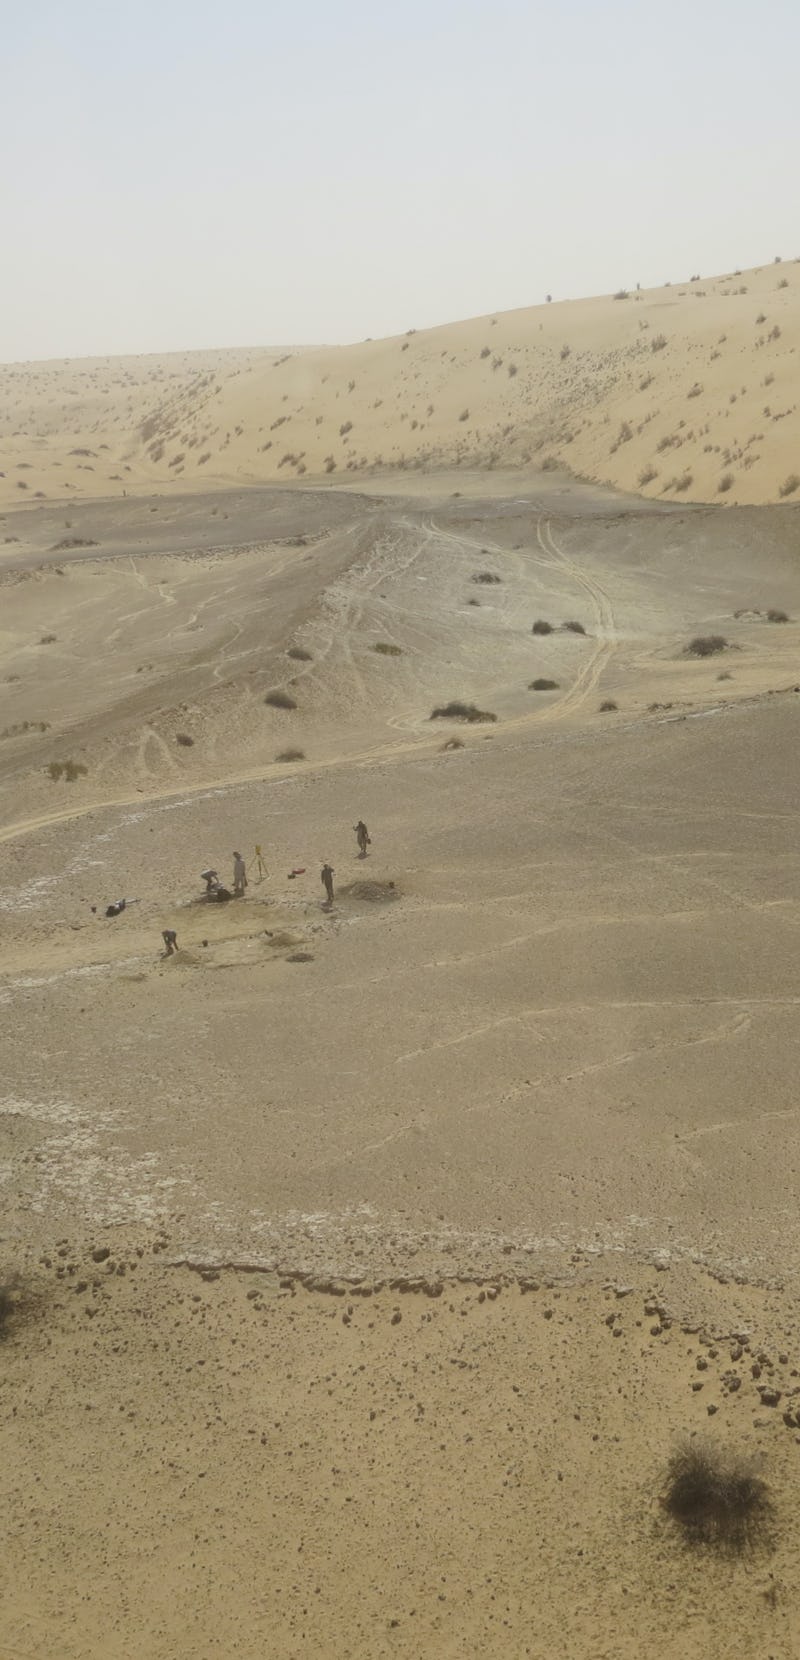 The KAM 4 site in the Nefud Desert in Saudi Arabia